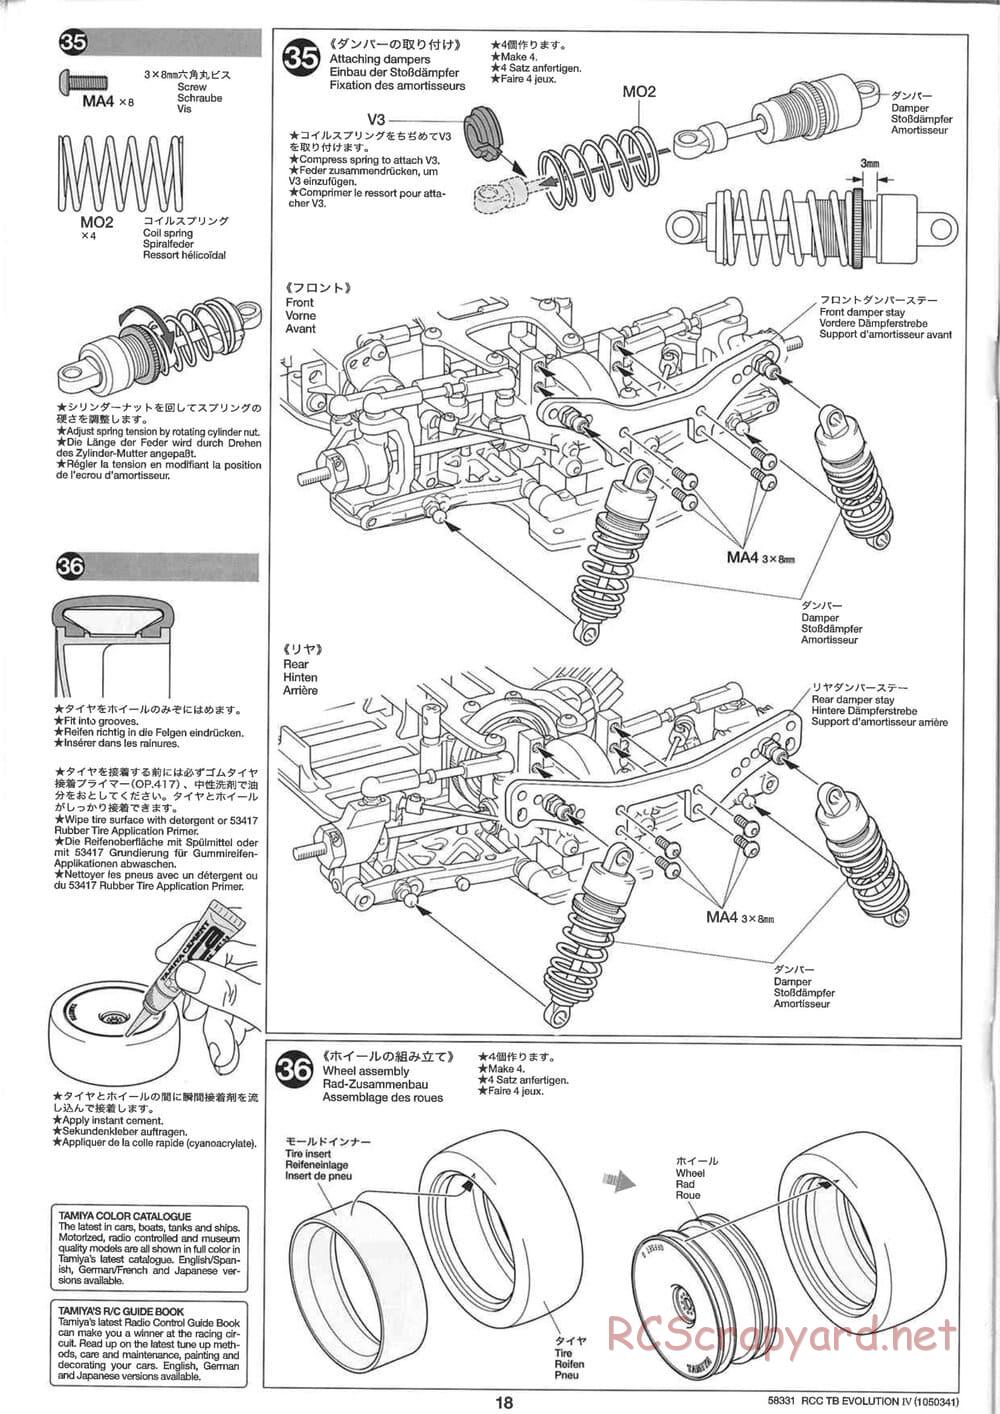 Tamiya - TB Evolution IV Chassis - Manual - Page 18